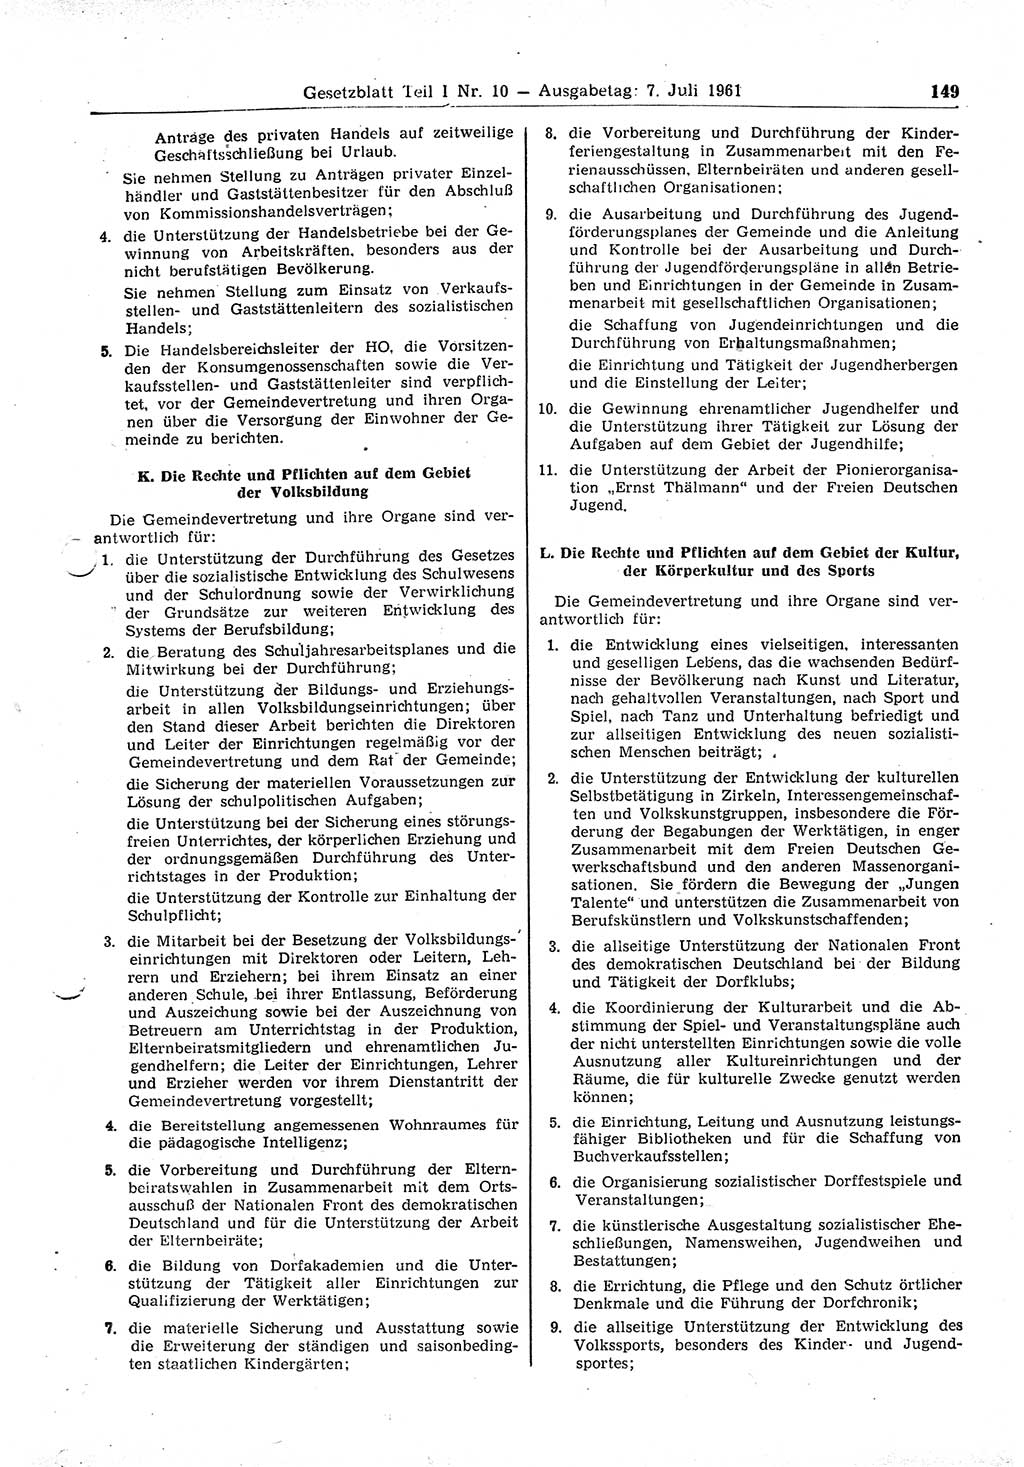 Gesetzblatt (GBl.) der Deutschen Demokratischen Republik (DDR) Teil Ⅰ 1961, Seite 149 (GBl. DDR Ⅰ 1961, S. 149)